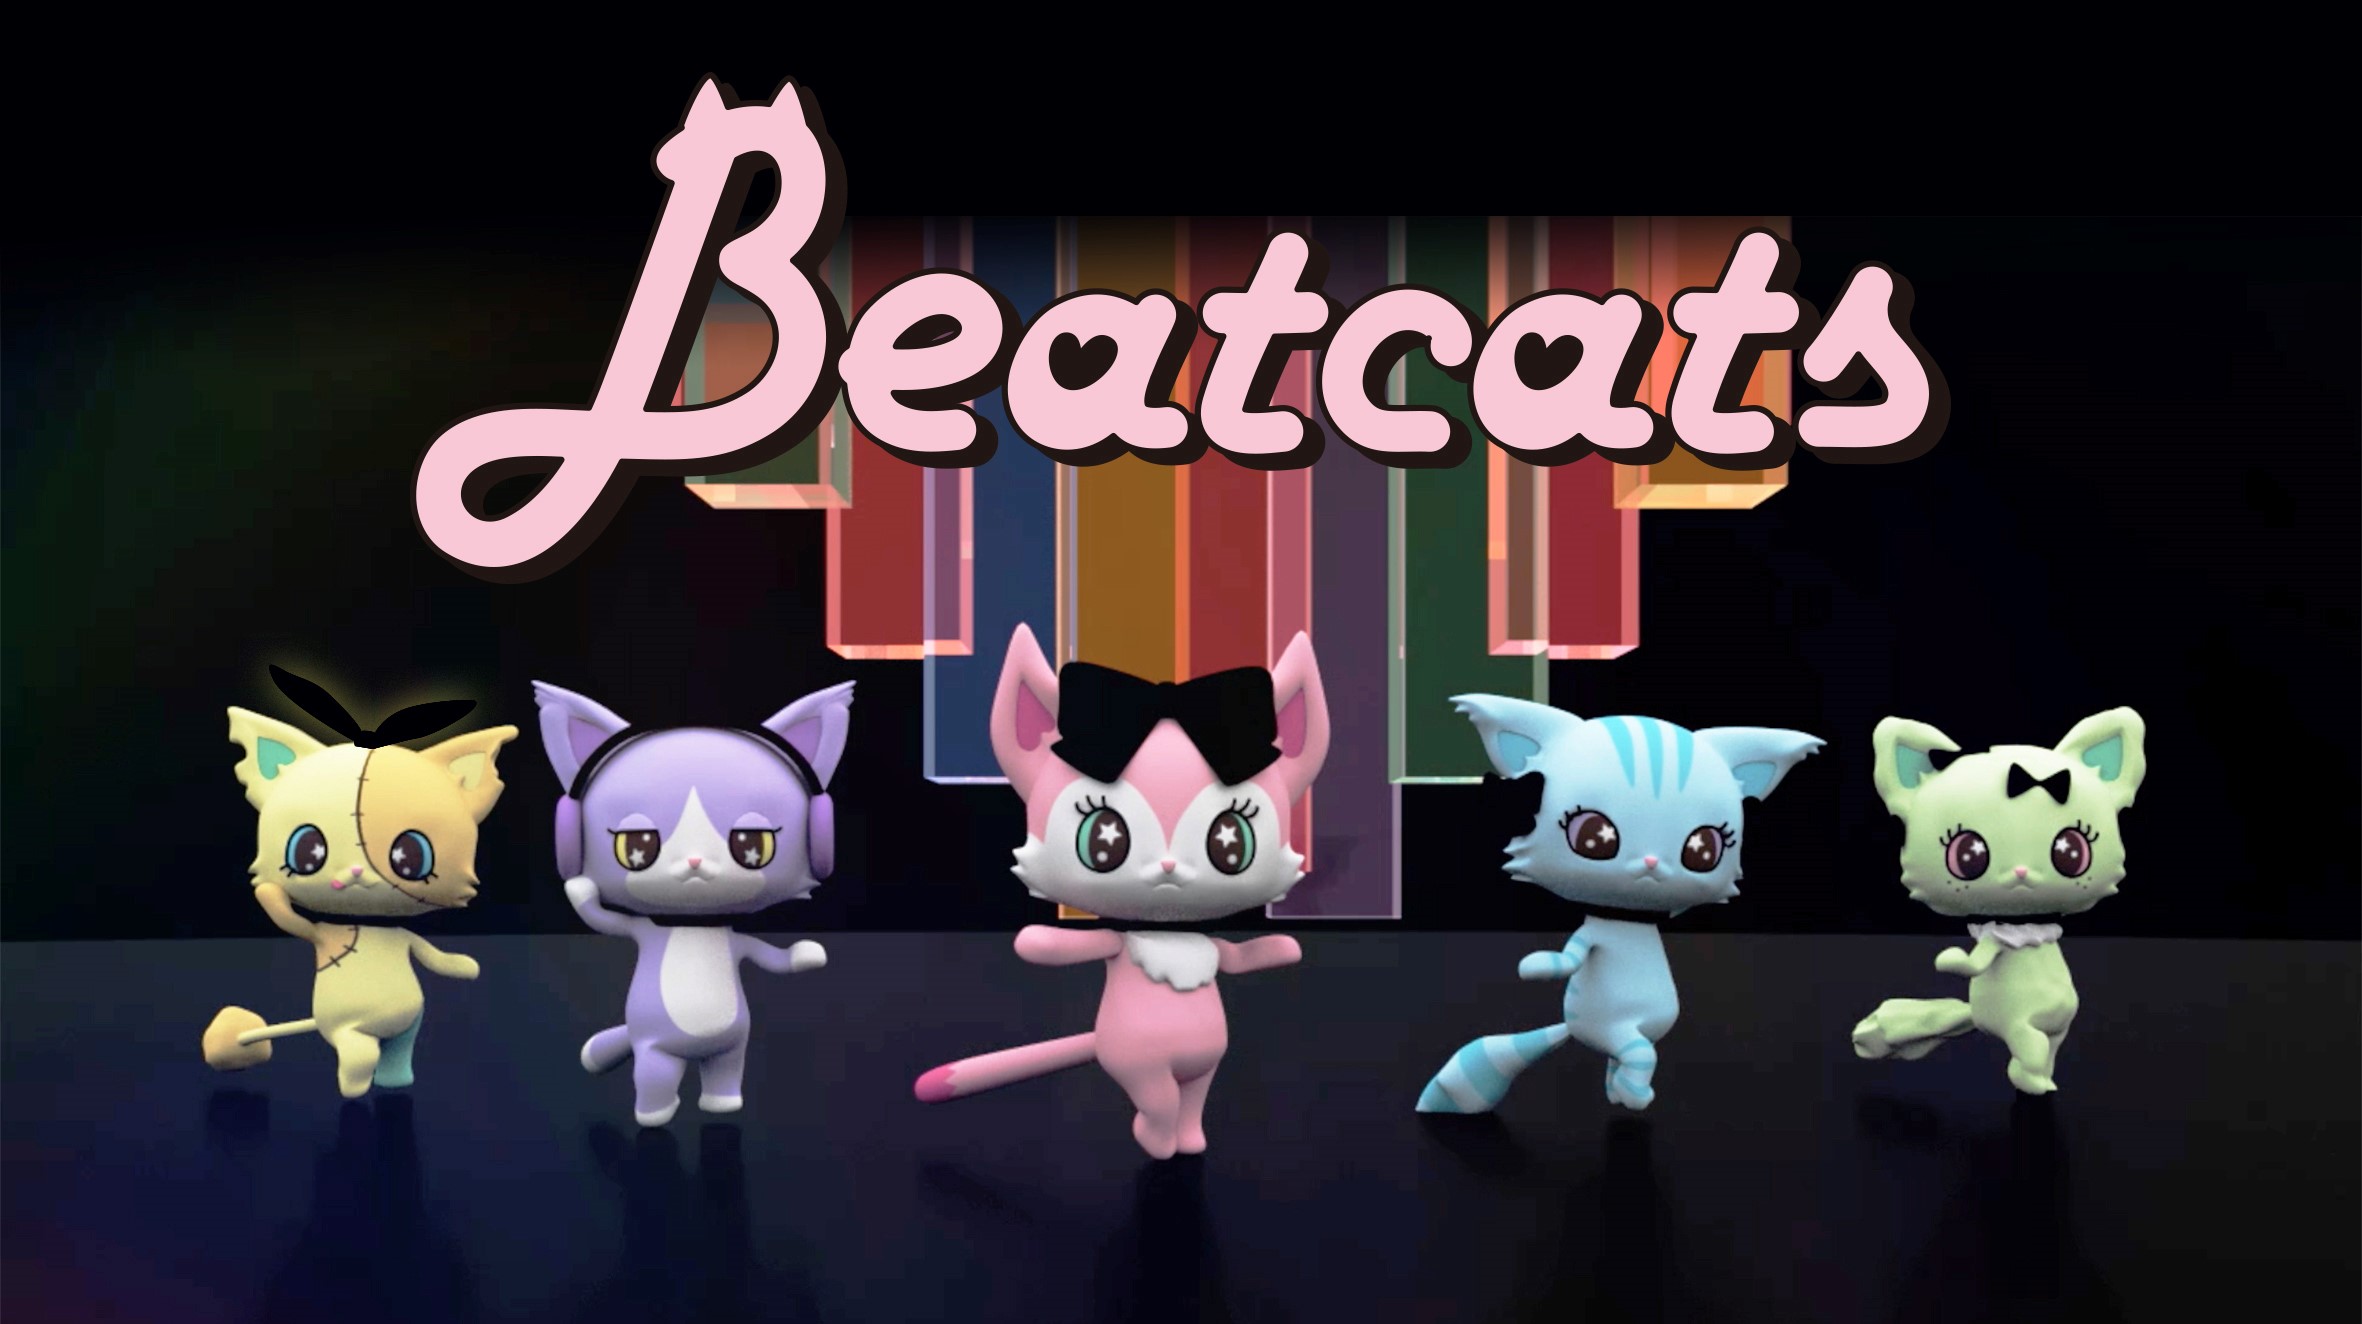 セガトイズとサンリオ 新たなキャラクター共同開発プロジェクト始動5人組 ダンスボーカルユニット Beatcats ビートキャッツ 10月8日 木 デビュー 株式会社サンリオのプレスリリース